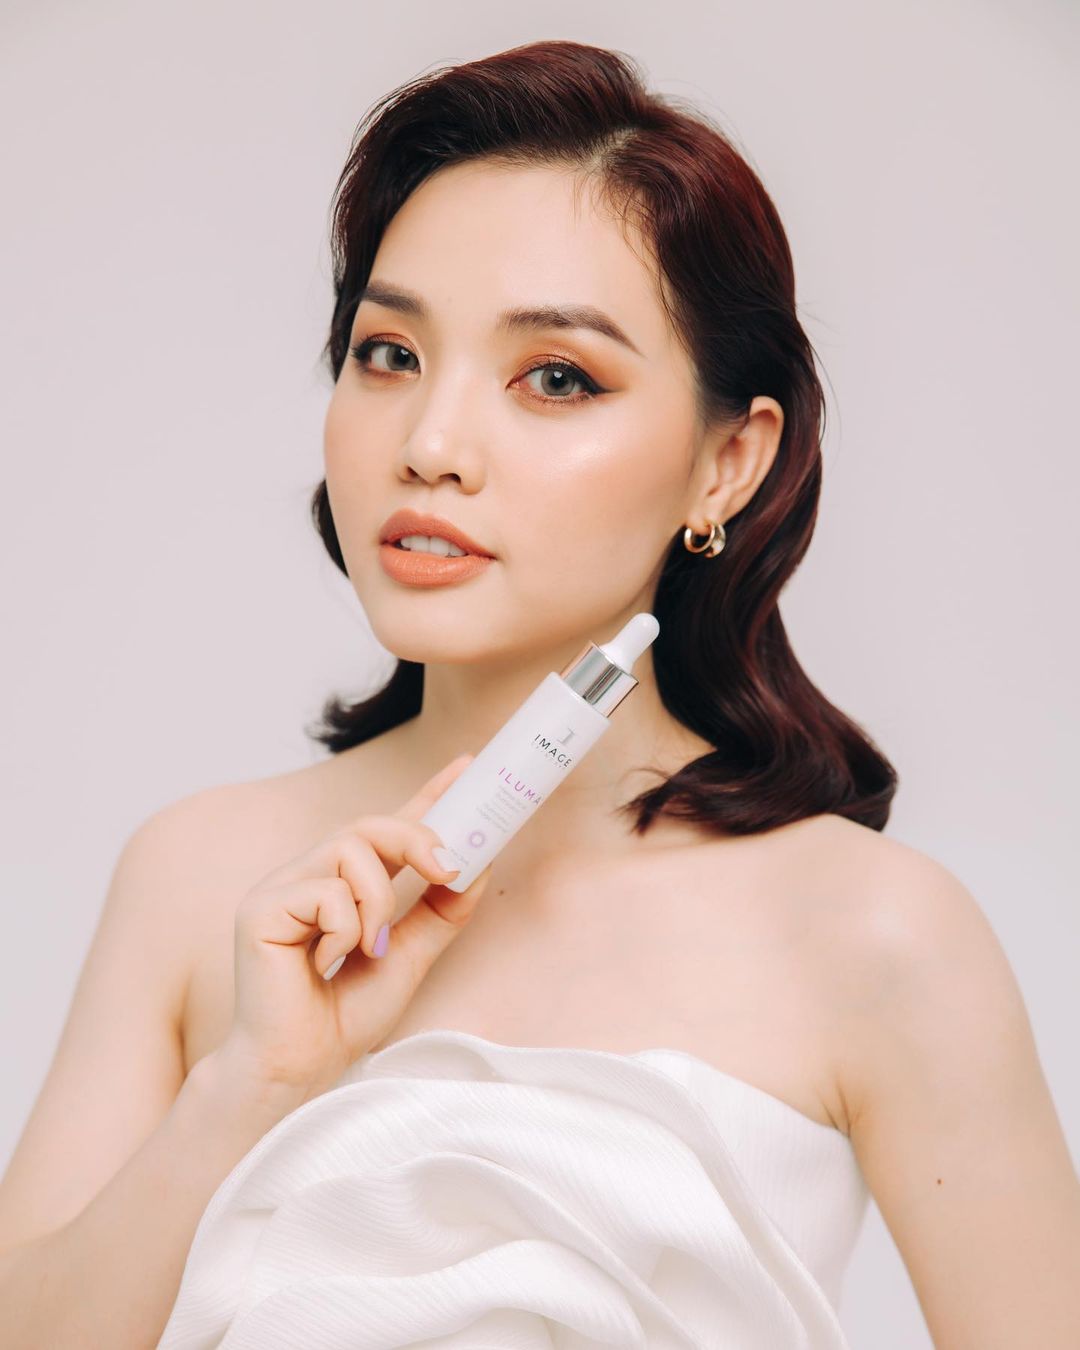 Ca sĩ Linh Phi rất yêu thích dòng sản phẩm serum trị nám mới của thương hiệu dược mỹ phẩm Image Skincare